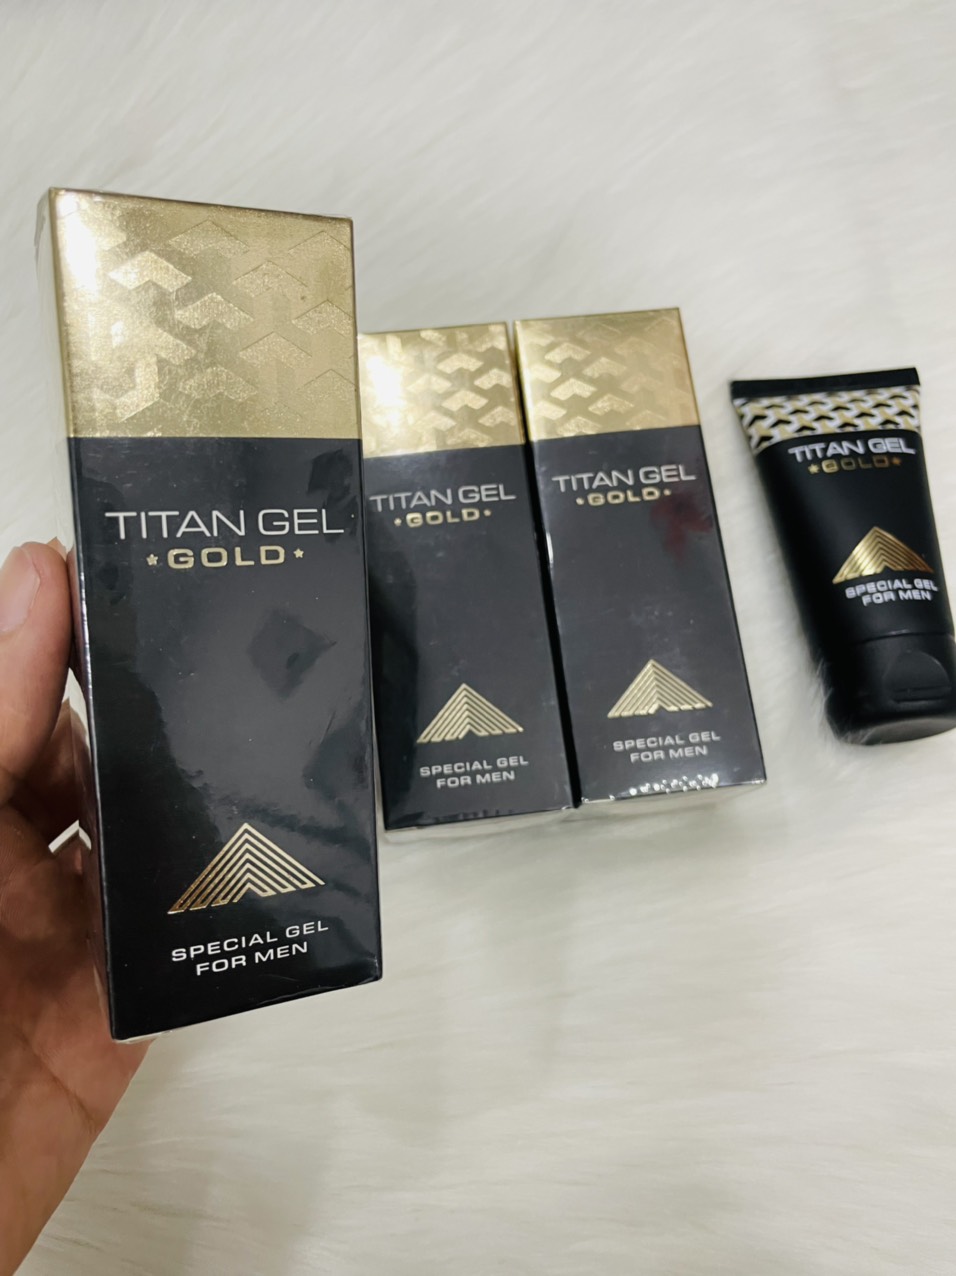 Titan Gel 50ml phiên bản Gold giới hạn giúp tăng kích thước, kéo dài thời gian (hàng Nga)